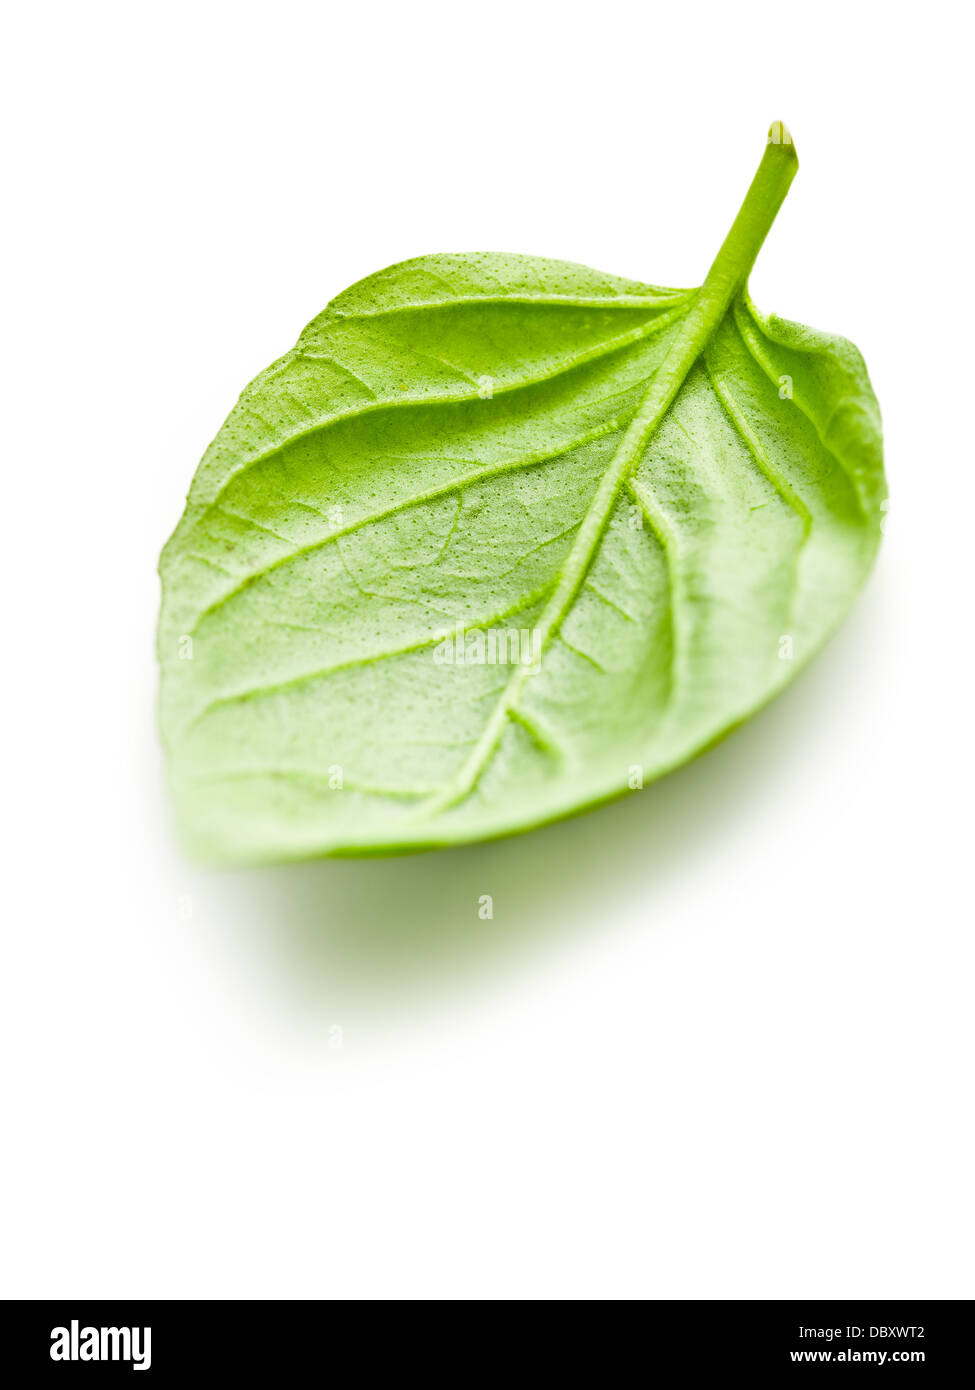 basil leaf on white background Stock Photo